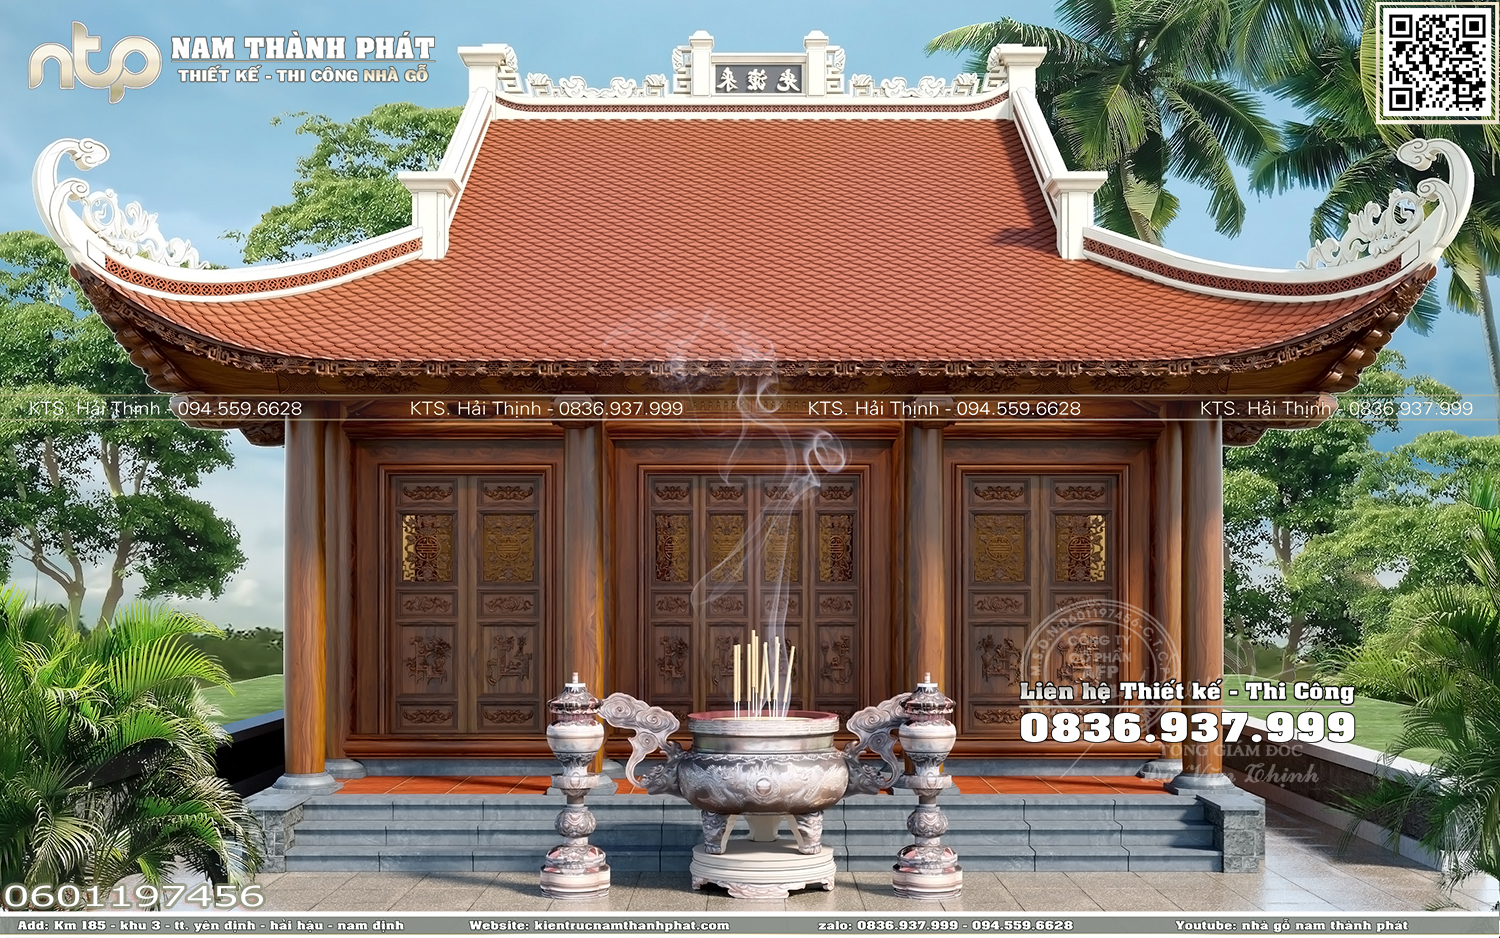 Nhà thờ gỗ 3 gian - Mẫu điện thờ 3 gian đẹp tại Lạng Sơn